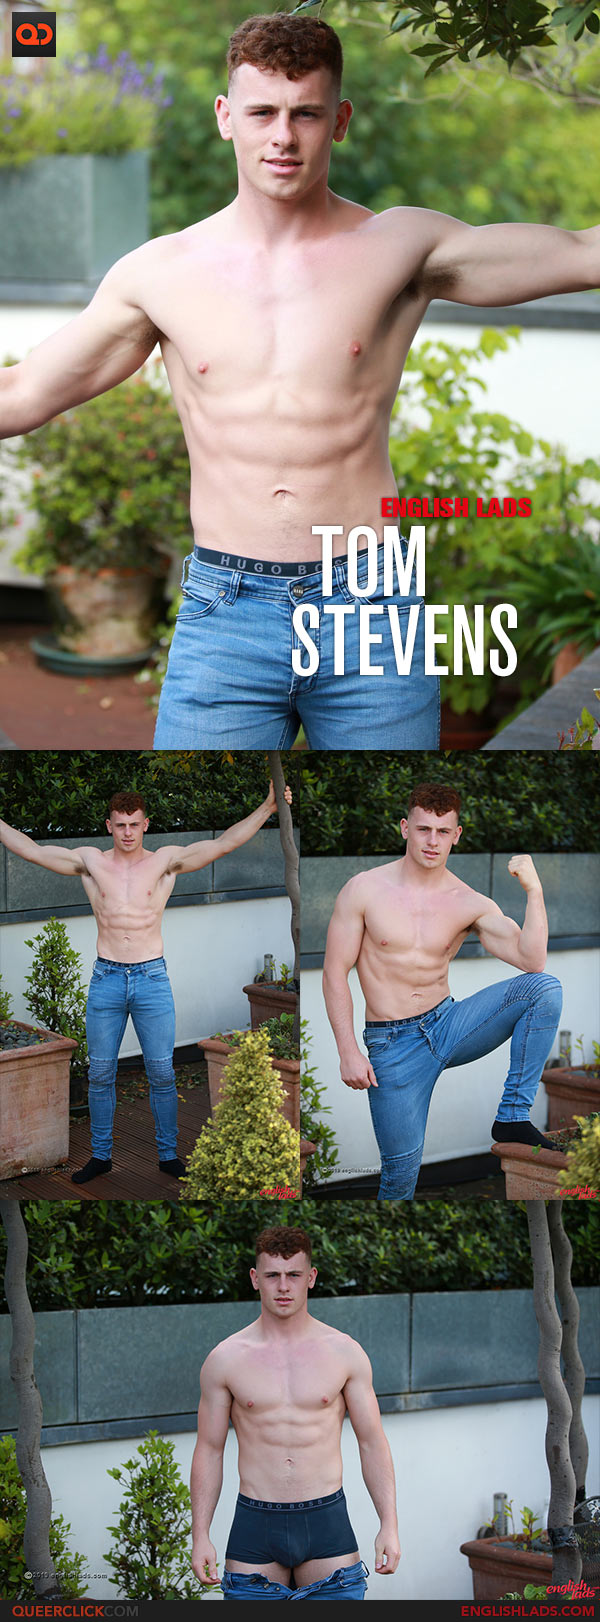 English Lads: Tom Stevens